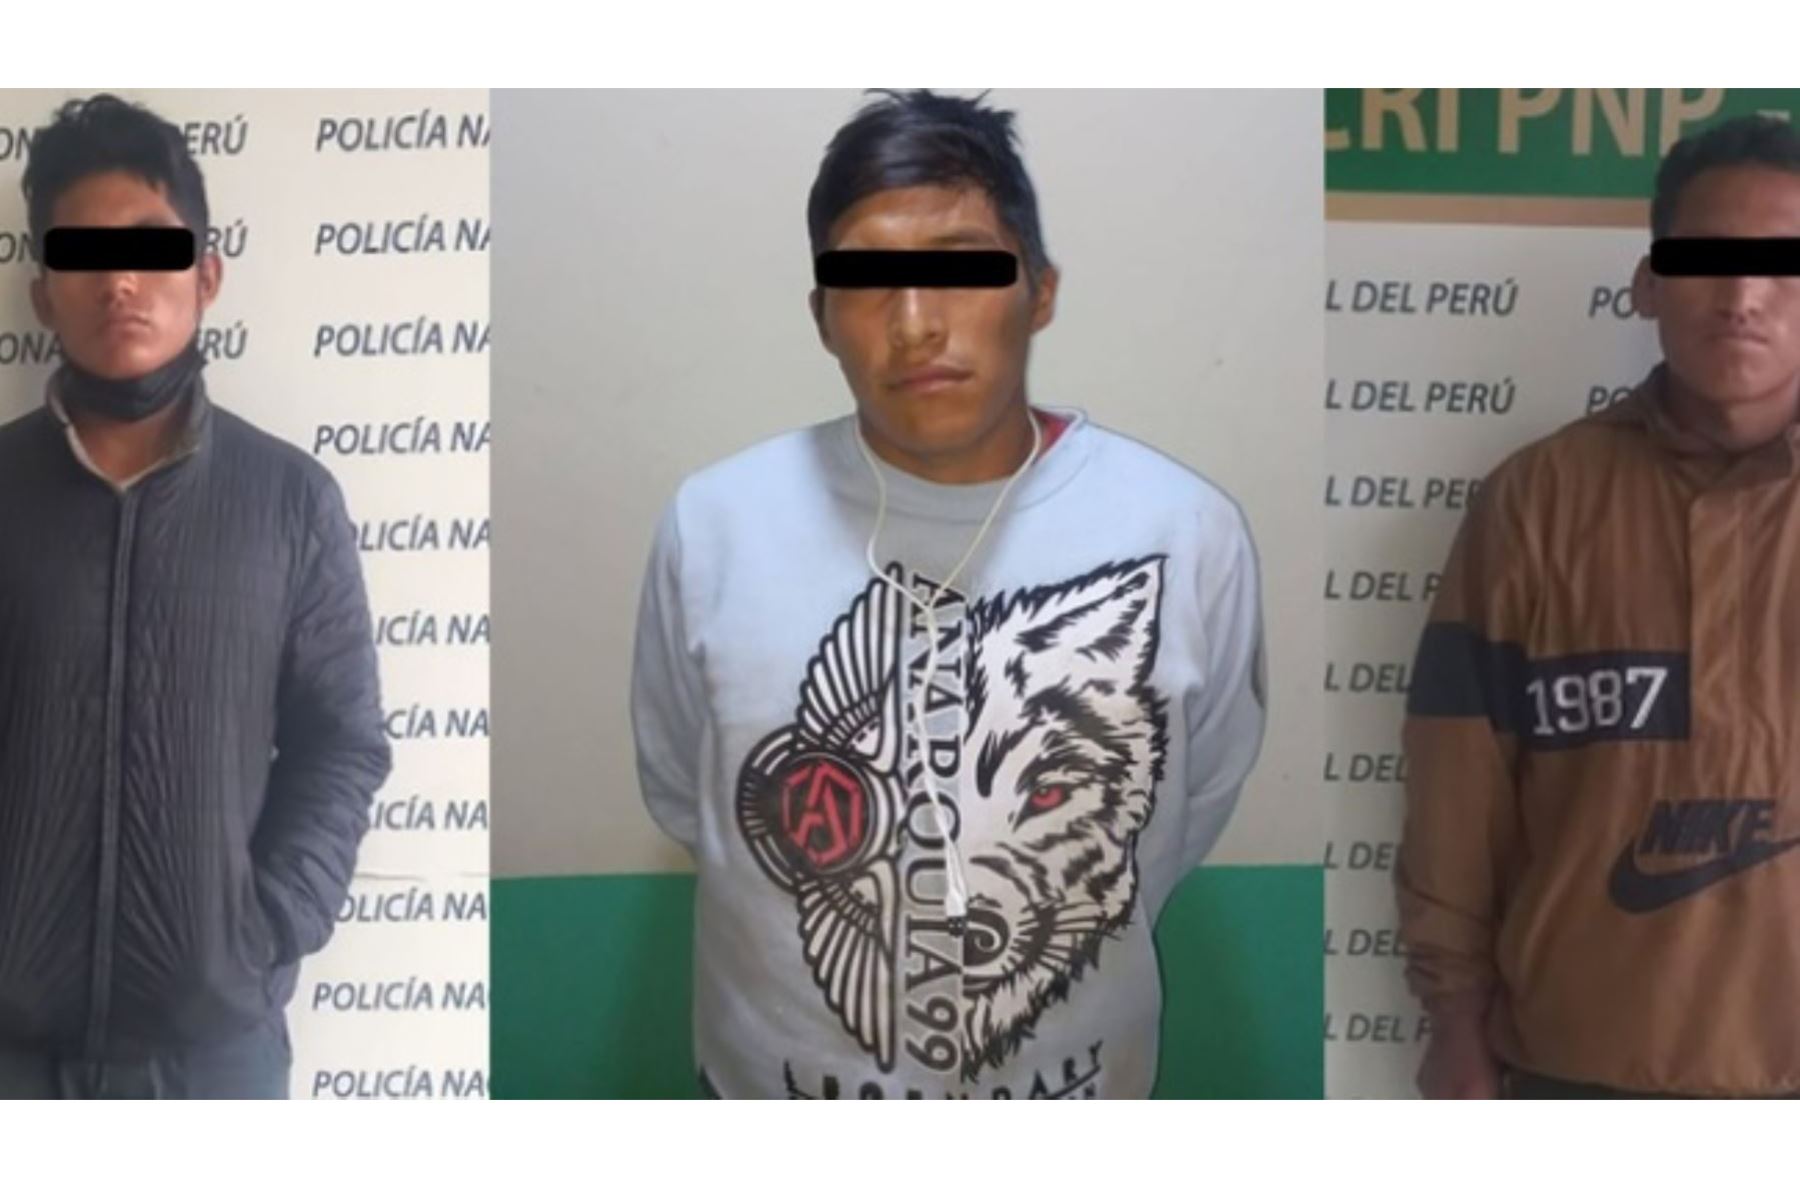 La Policía Nacional del Perú capturó en Huancayo a tres presuntos sicarios que habrían asesinado al suboficial de primera PNP Rony Pier Cuyubamba Terreros, de 38 años, a quien emboscaron y dispararon cuando cumplía su labor de brindar seguridad en carreteras en la región Junín, informó el Ministerio del Interior.